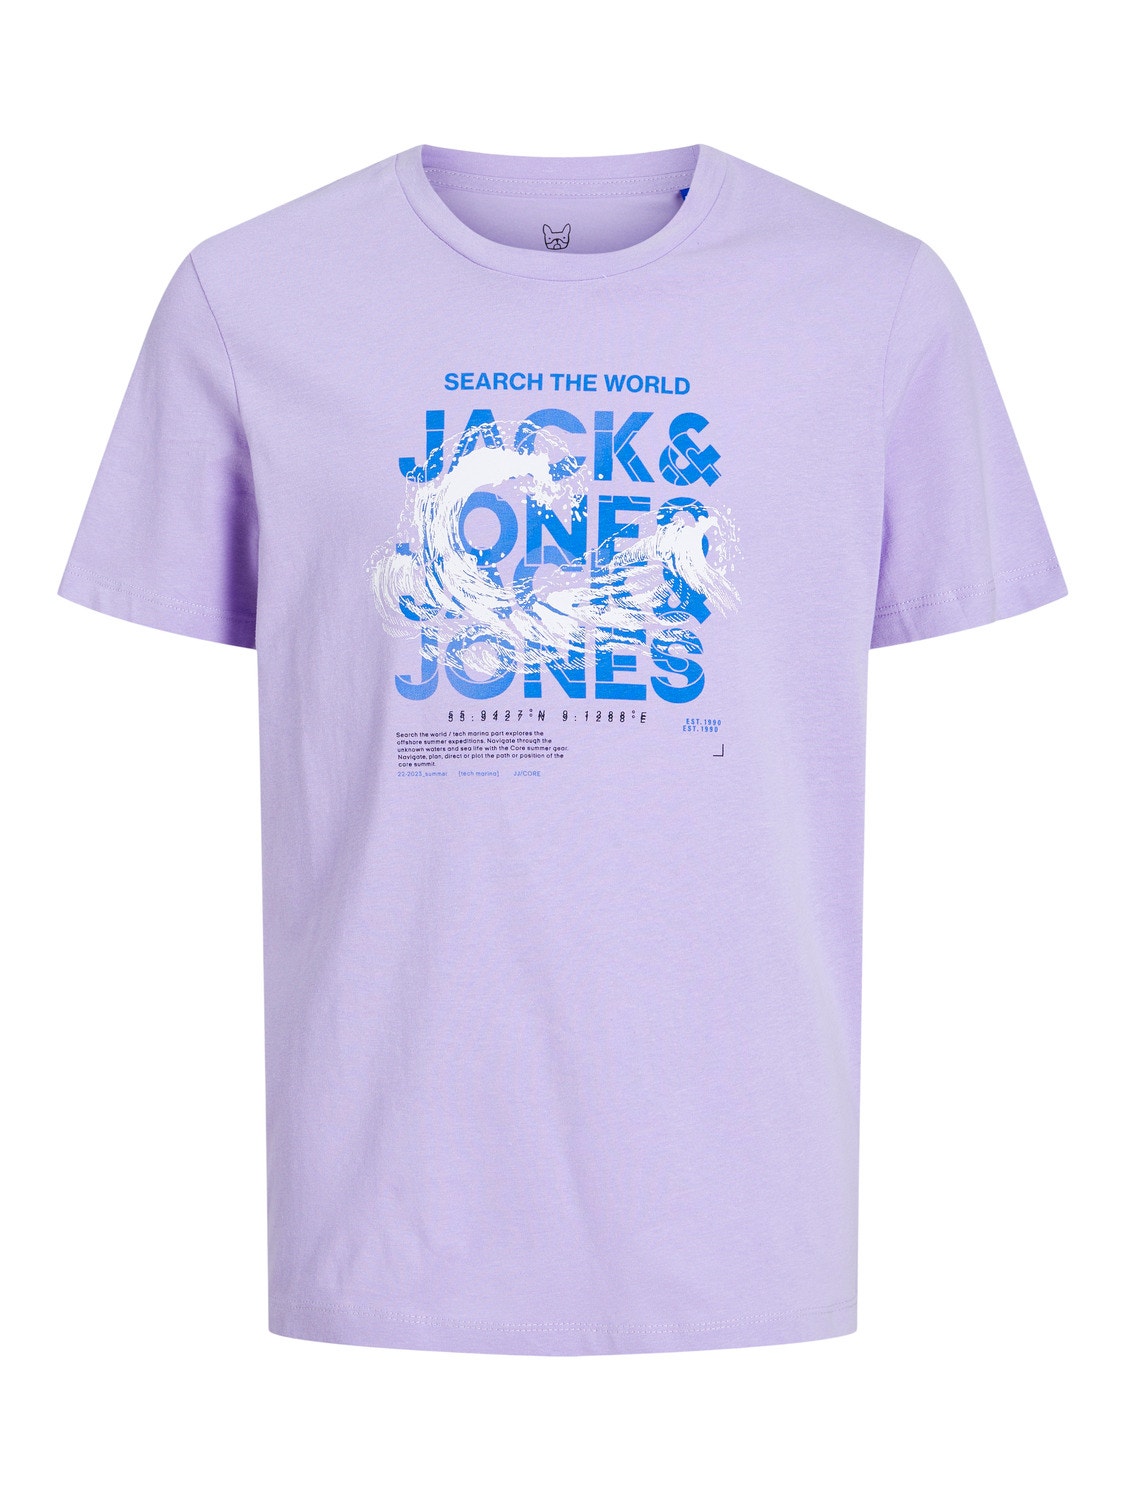 Jack & Jones Logo T-shirt For boys -Lavender - 12239537